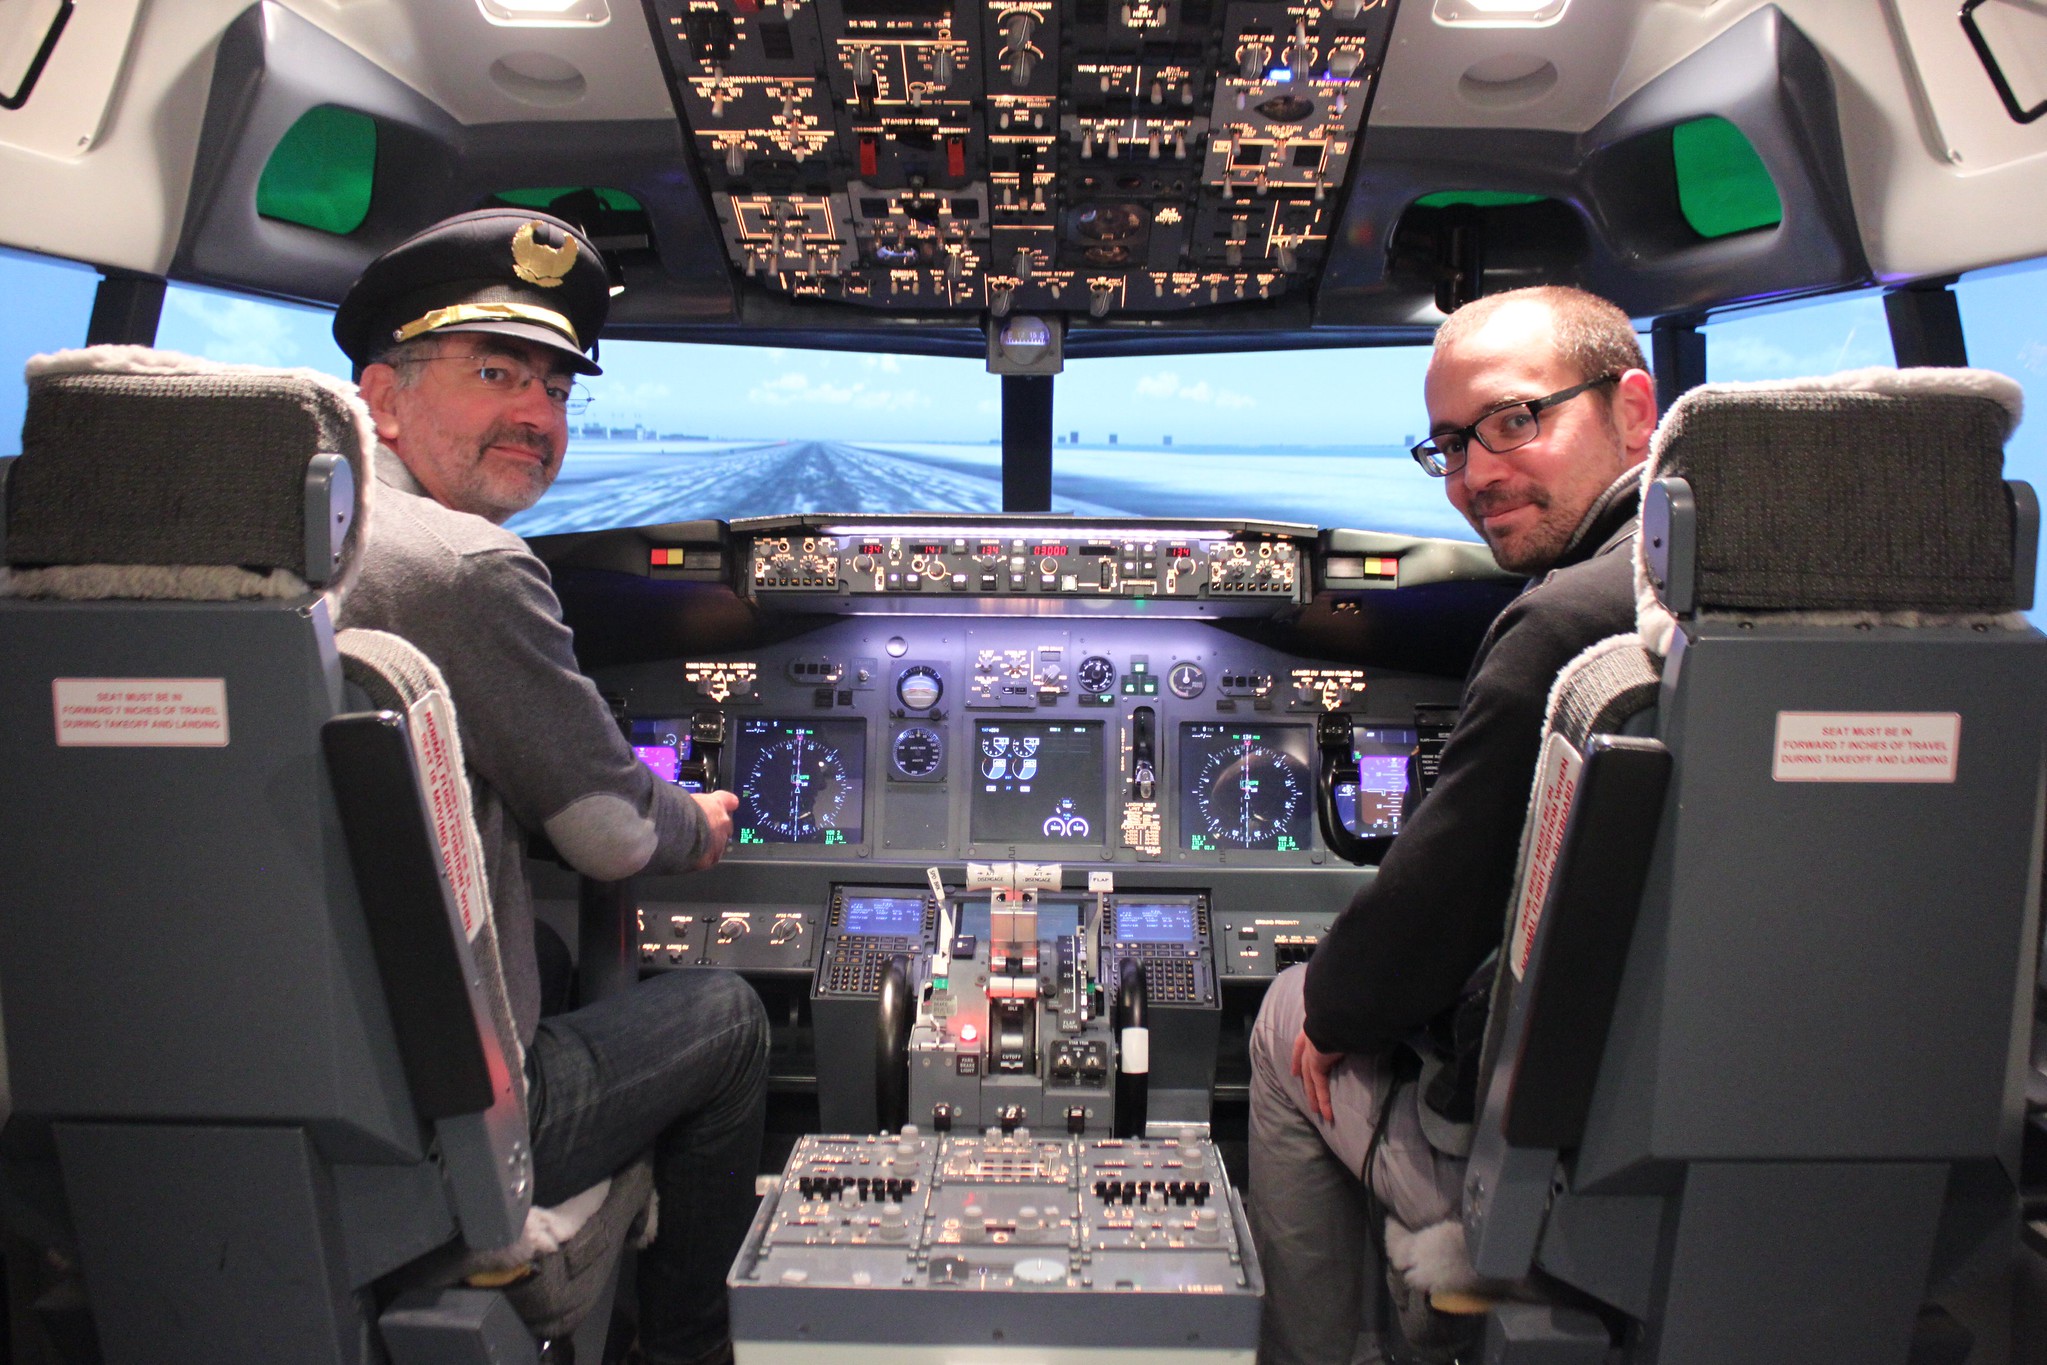 Pilotes à l'intérieur d'un avion | Source : flickr.com